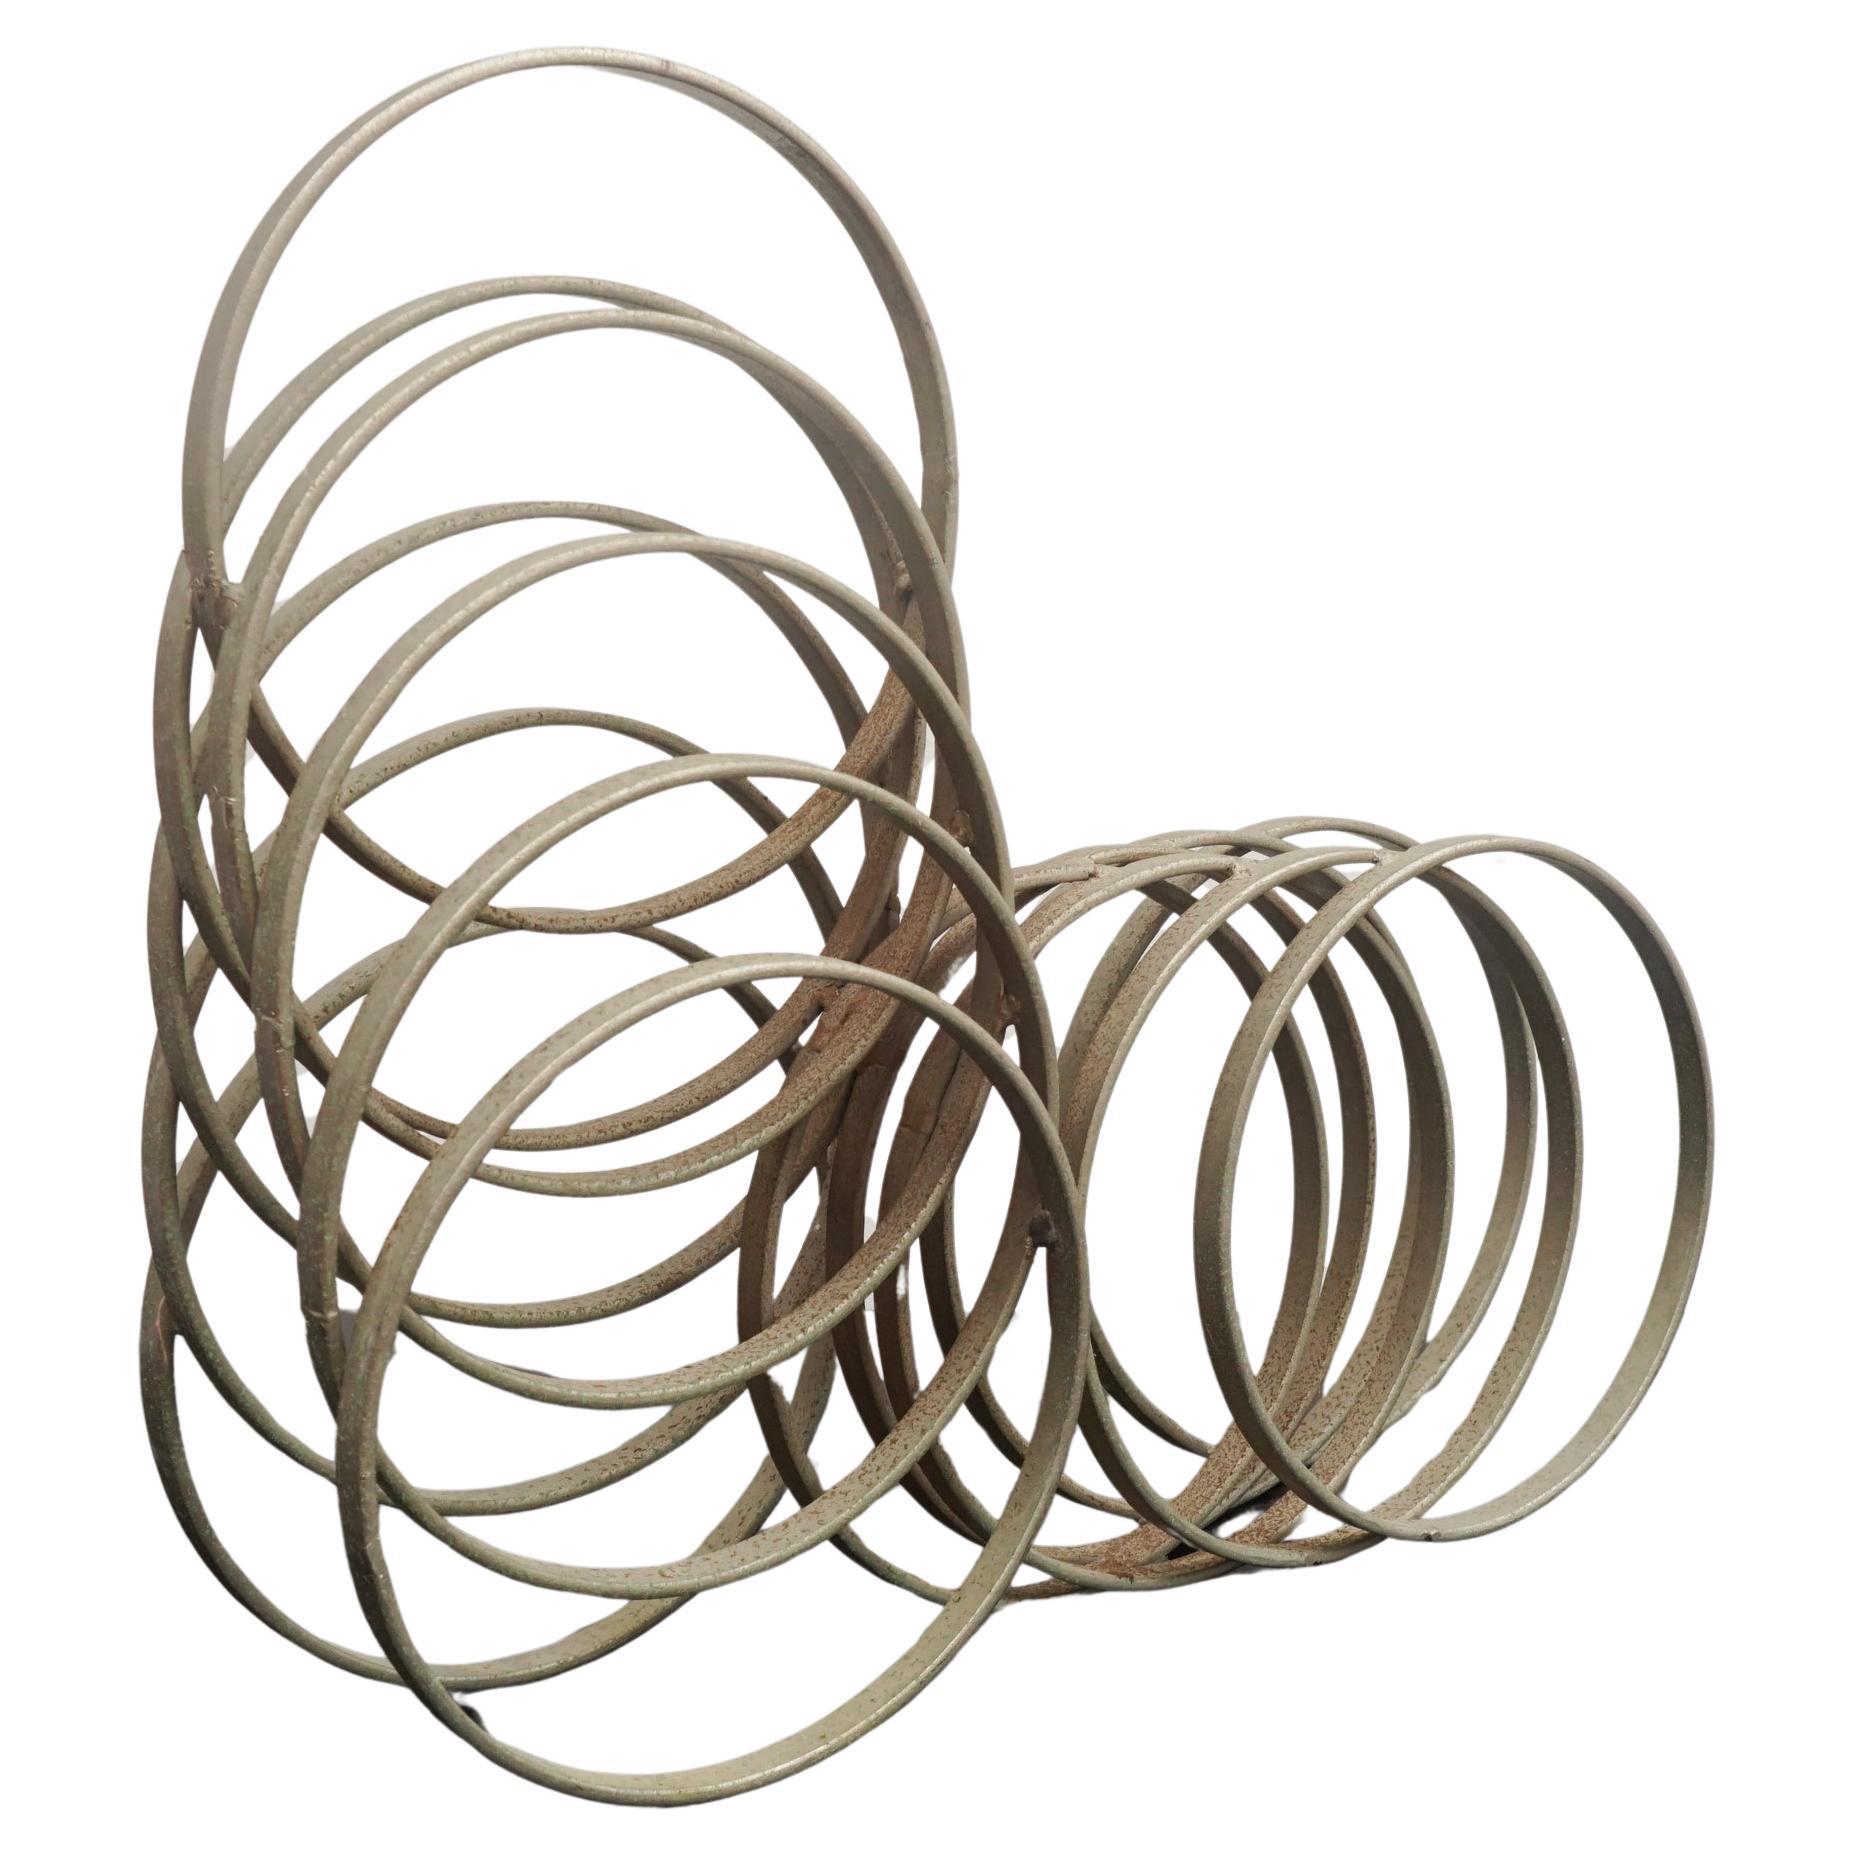 Italian Metal Rings Sculpture For Sale